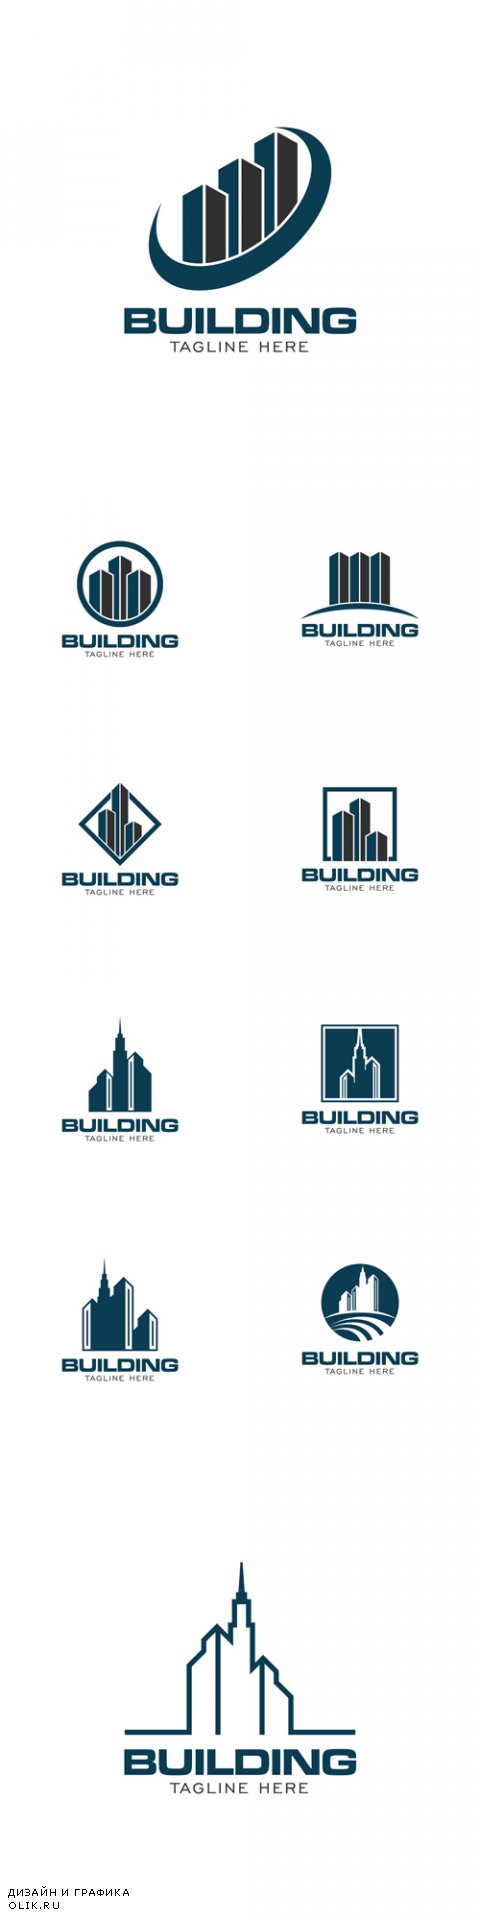 Vector Building Concept Logo Design Template